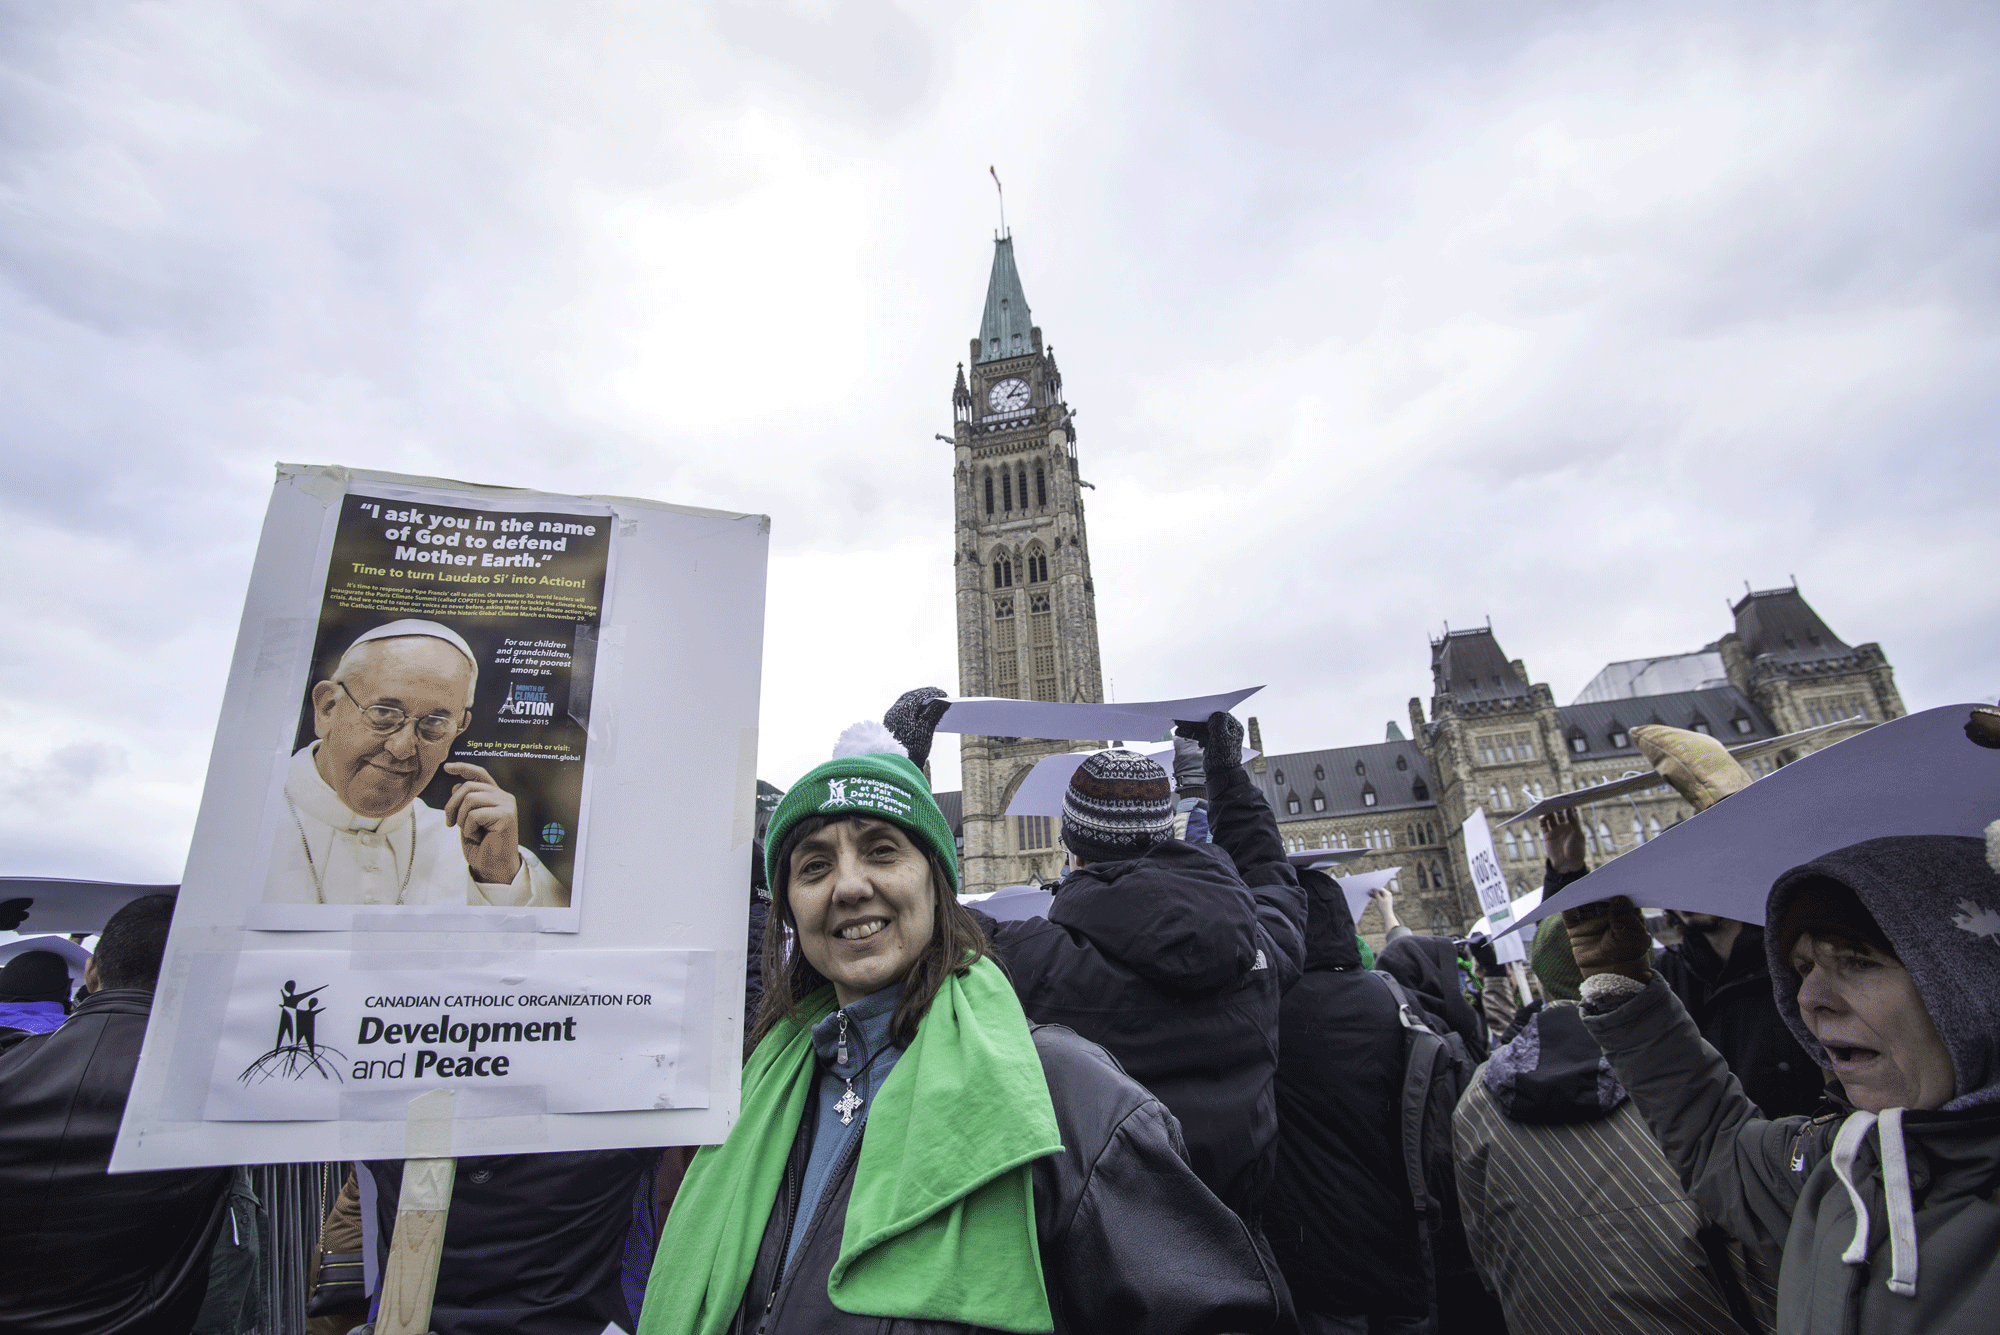 Marche pour le climat en vue de la COP21, Ottawa, le 29 novembre 2015 où des associations se réfèrent à l'encyclique du Pape François. (Ici la Canadian catholic organization for Development and Peace). [cc-by-sa - Michael Swan]